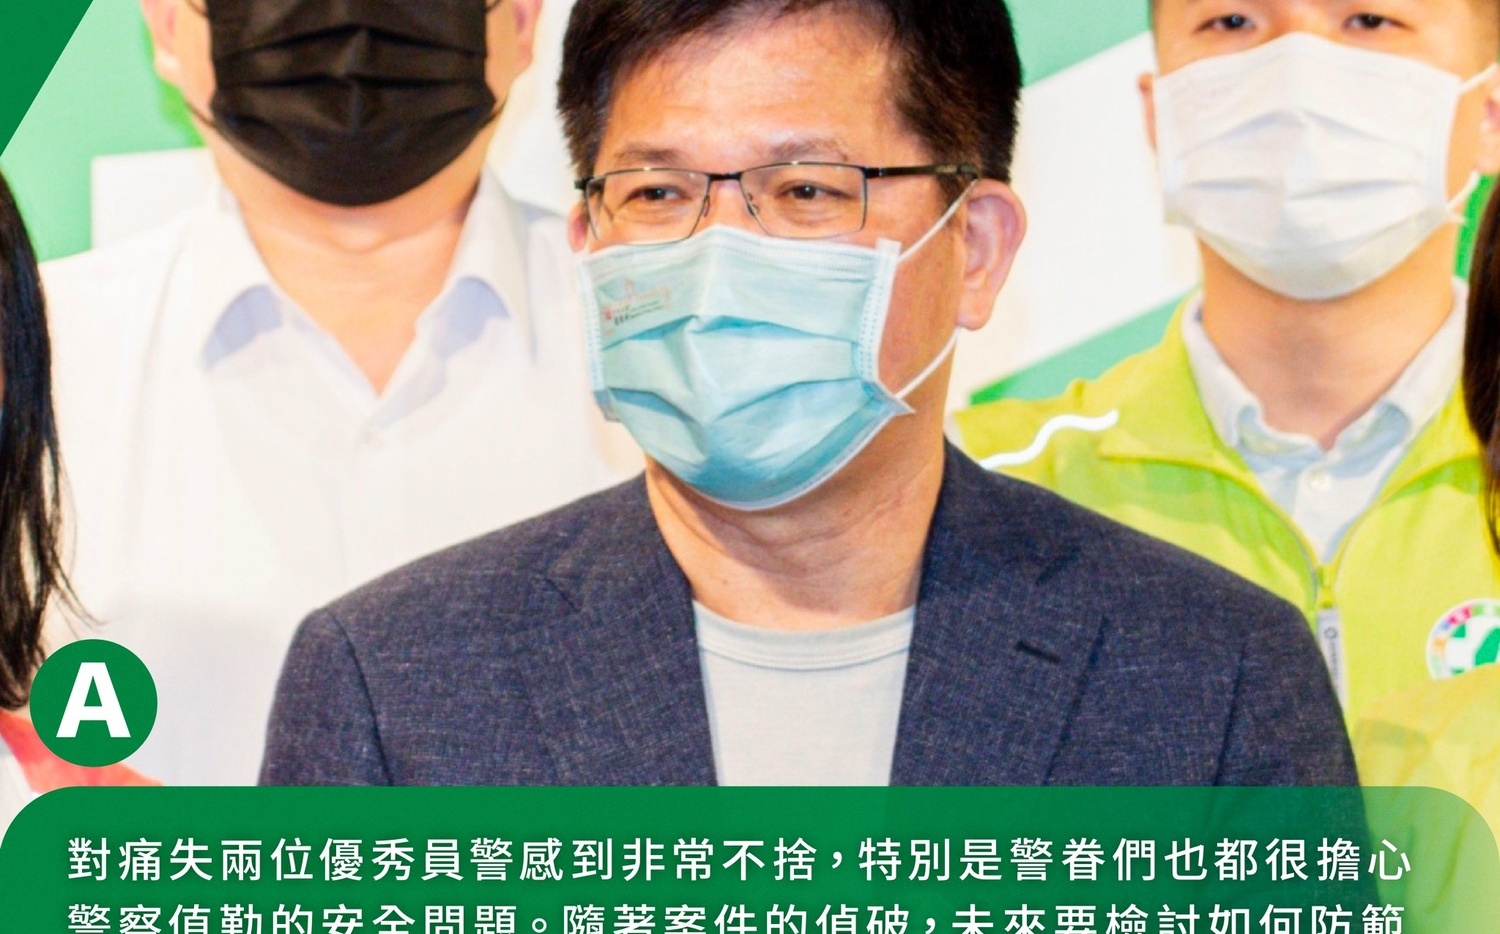 台南警遭外役監逃犯殘忍殺害 林佳龍：要建立警察執法安全防護機制 | 政治